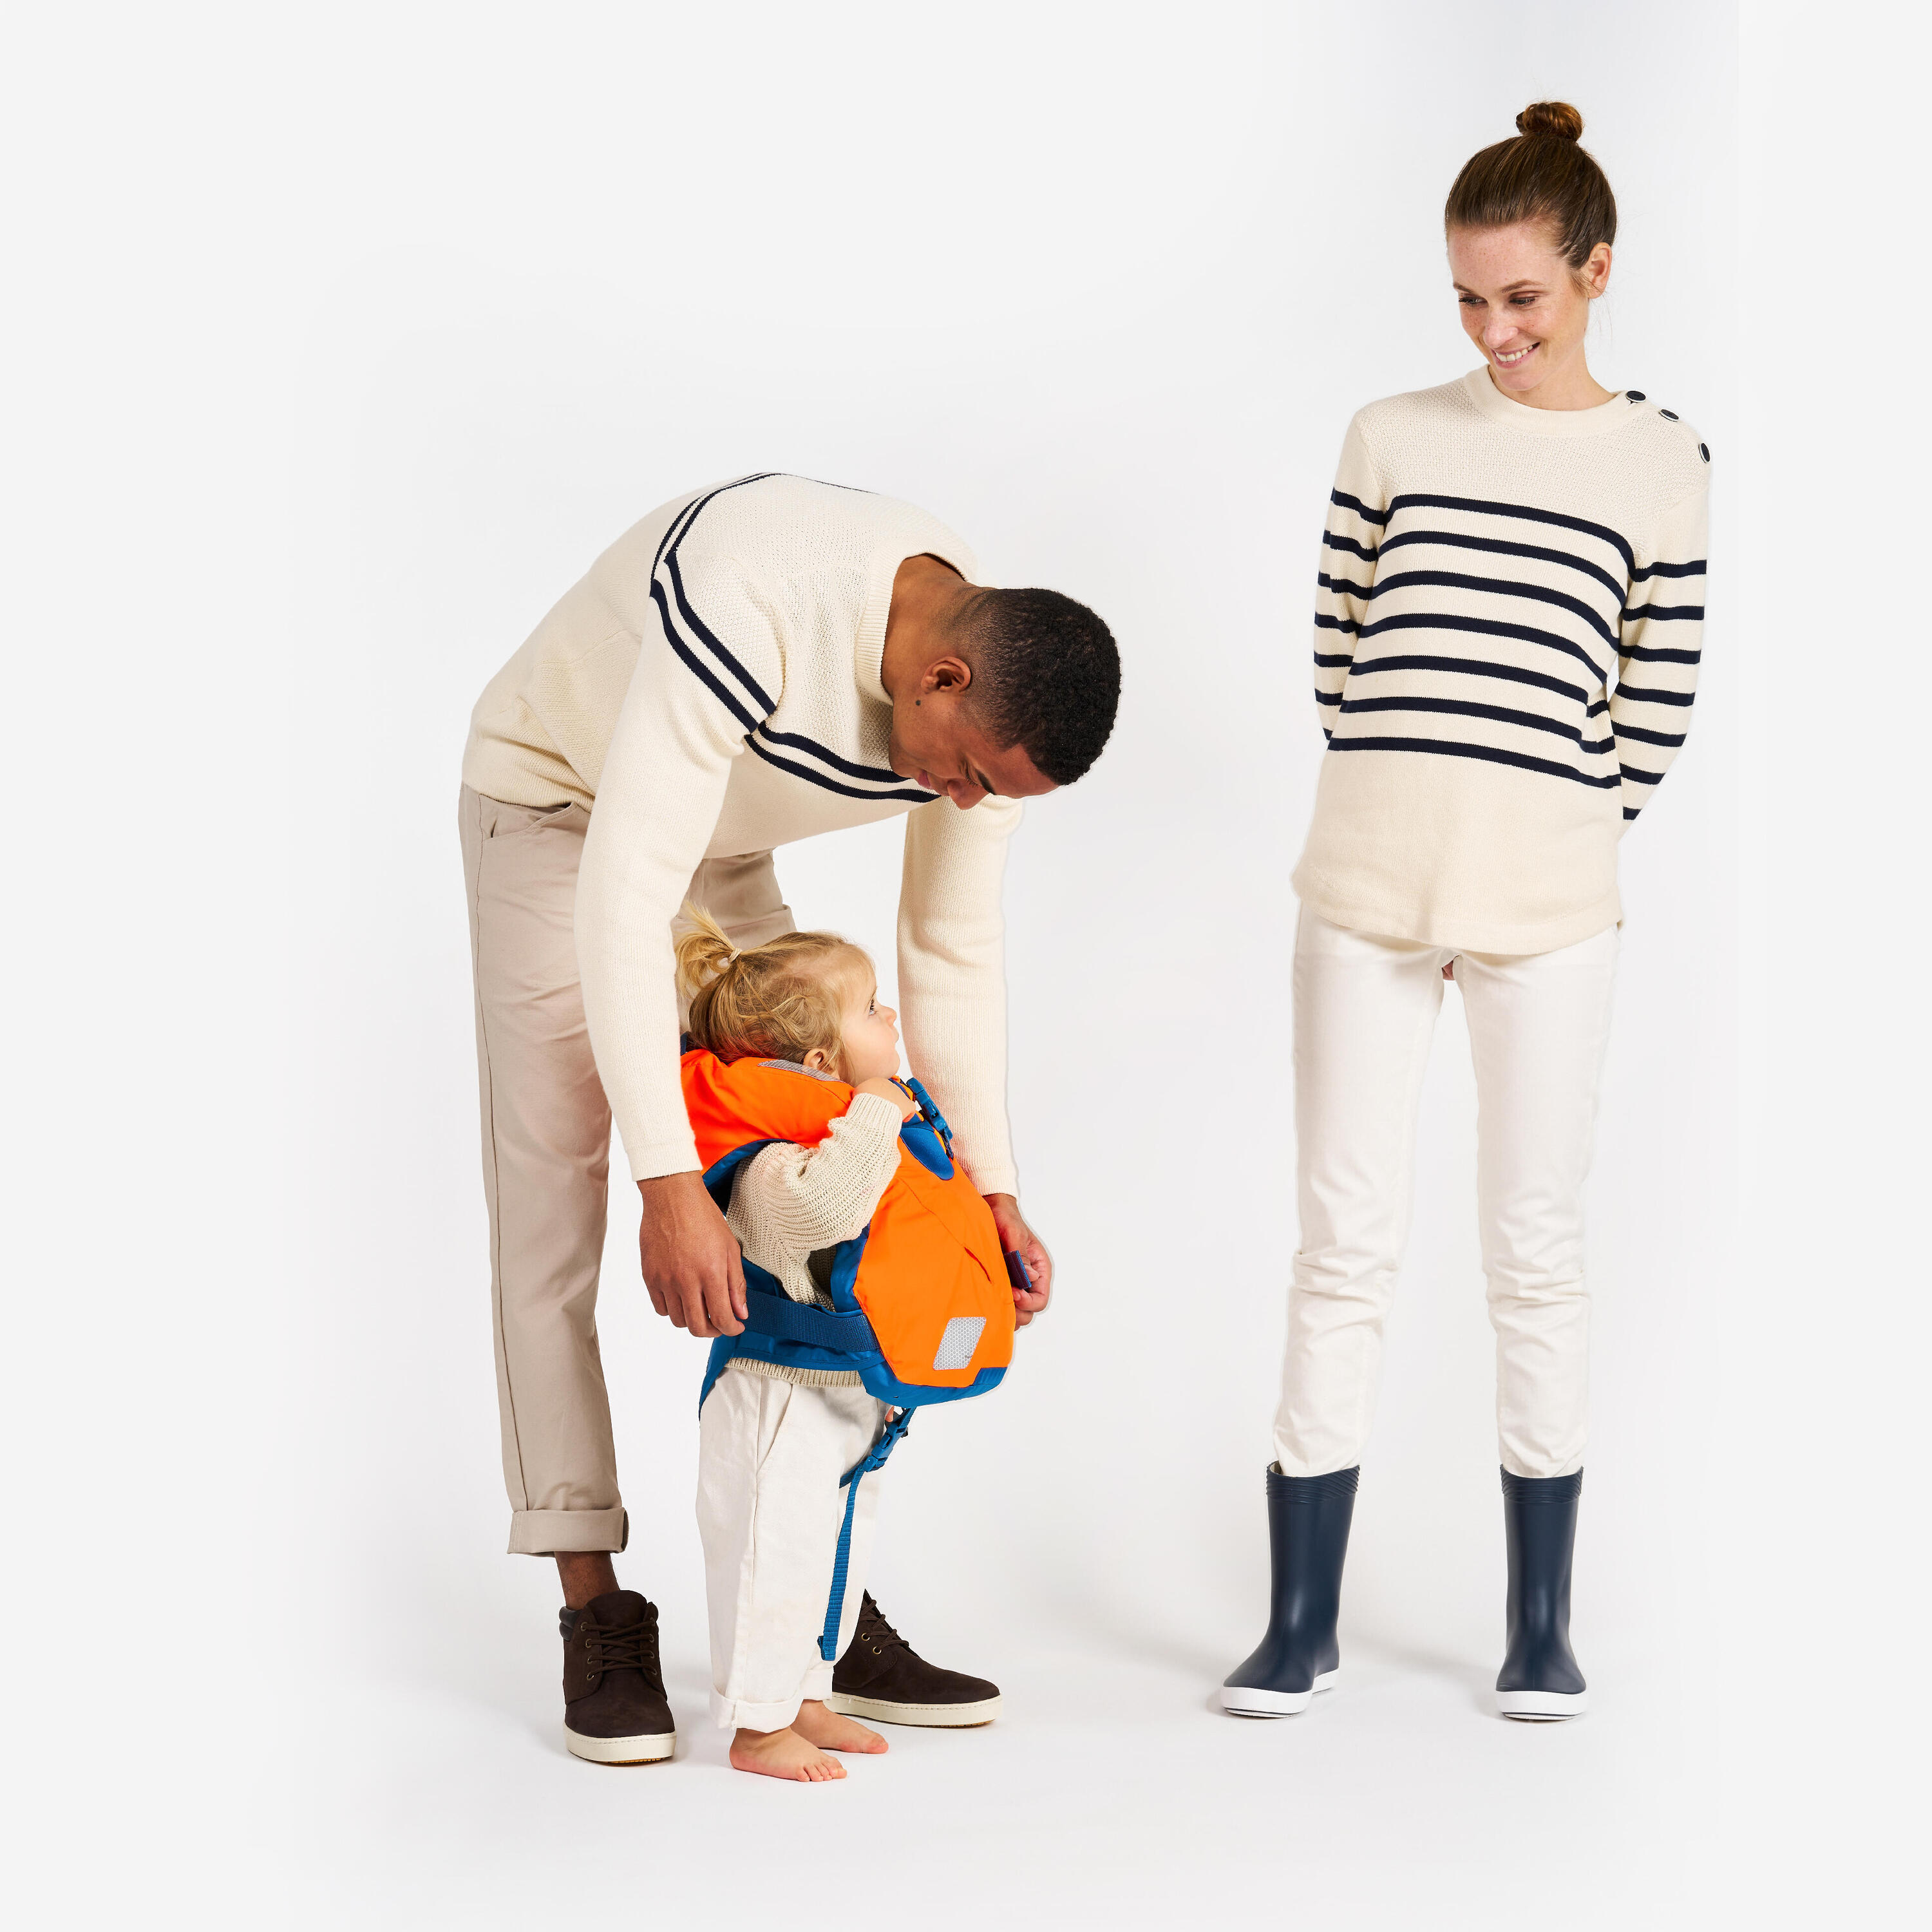 LJ100N easy baby life jacket for babies and infants 10-15 kg orange blue 14/15